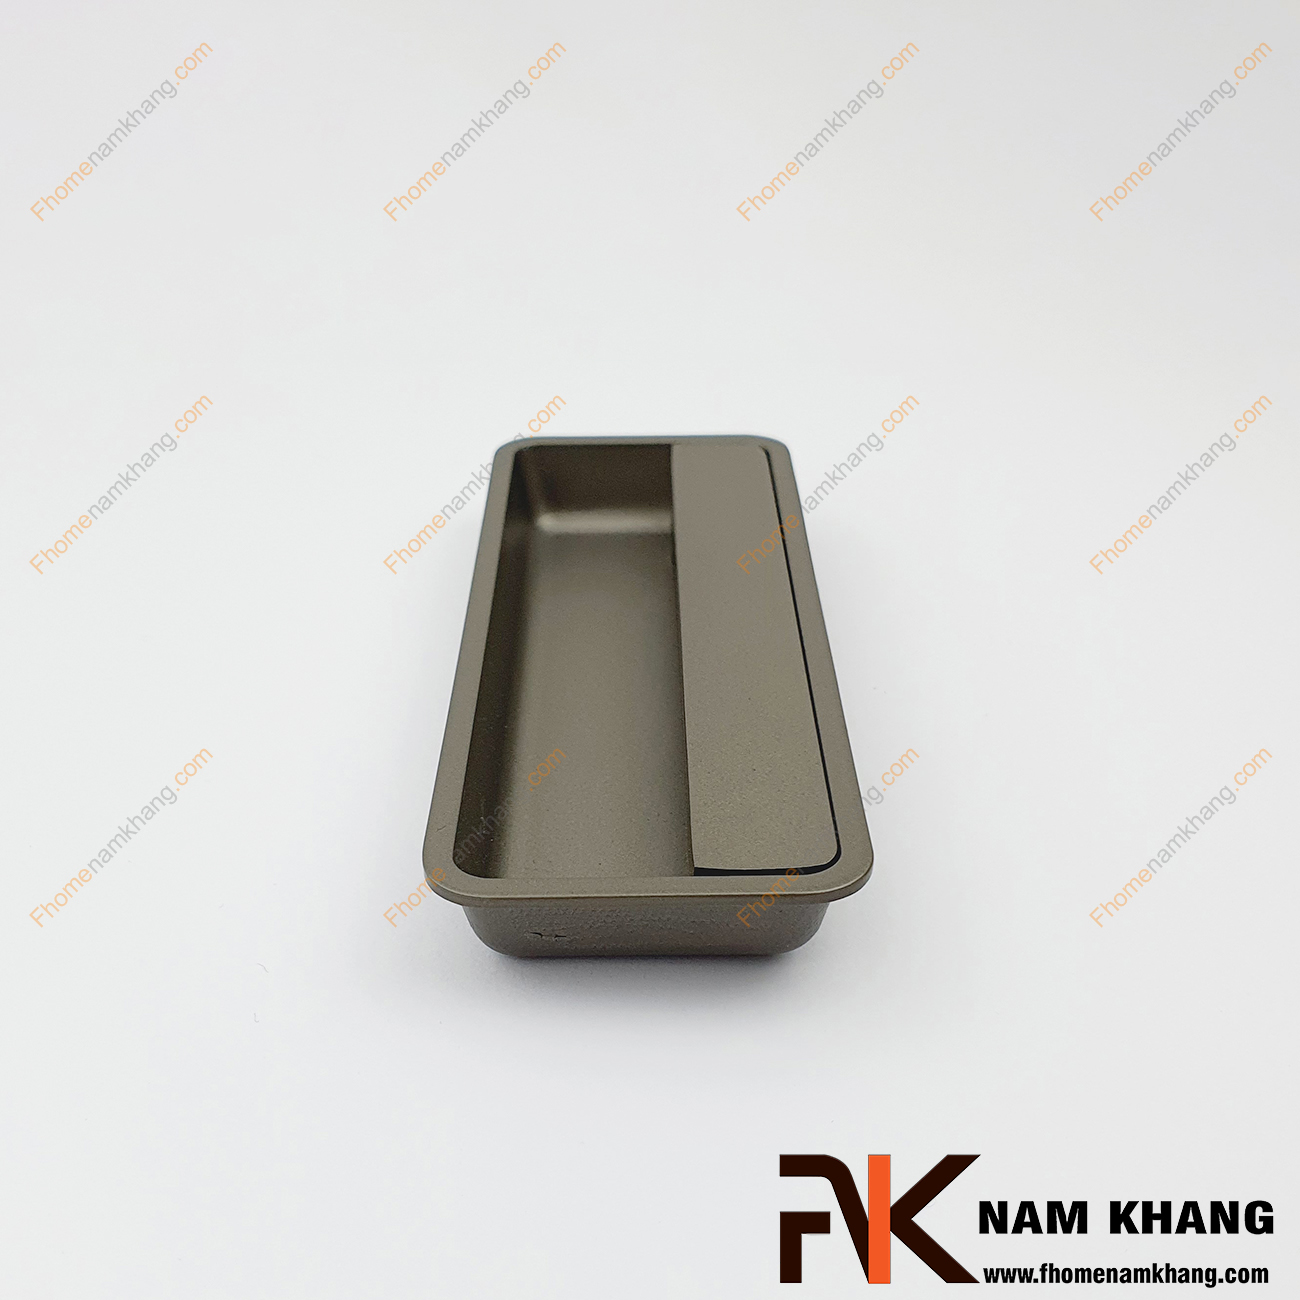 Tay nắm âm tủ màu xám NK462-X là loại tay nắm chuyên dùng cho các loại tủ đặt ở những nơi có không gian hạn chế hoặc dùng để nâng cao tính thẫm mỹ của sản phẩm.